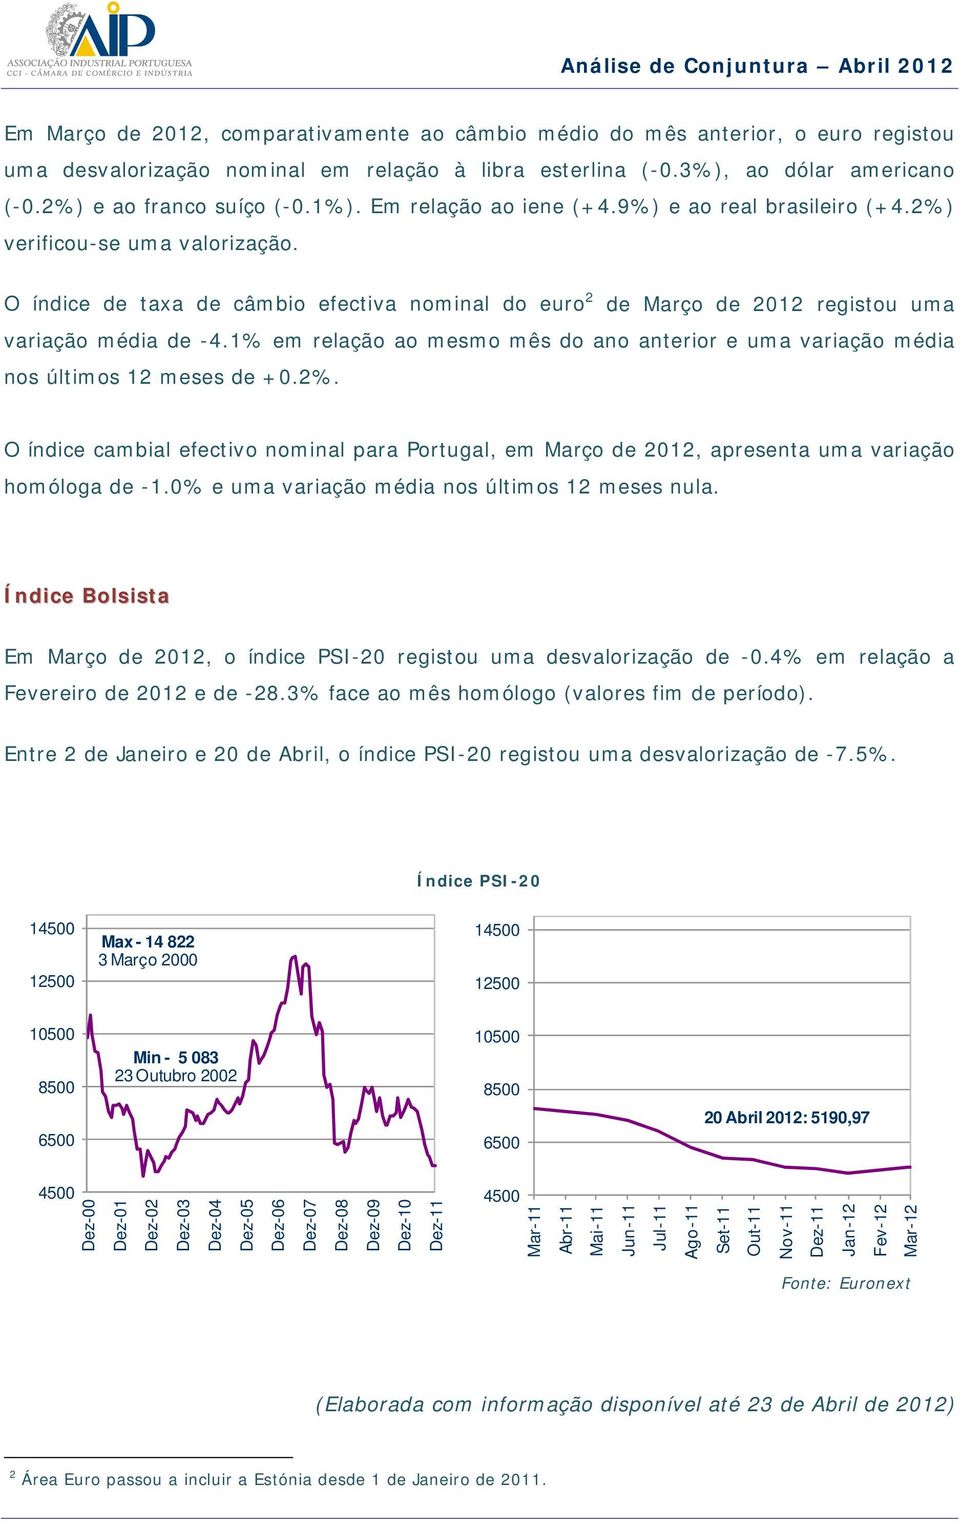 1% em relação ao mesmo mês do ano anterior e uma variação média nos últimos 12 meses de +0.2%. O índice cambial efectivo nominal para Portugal, em Março de 2012, apresenta uma variação homóloga de -1.